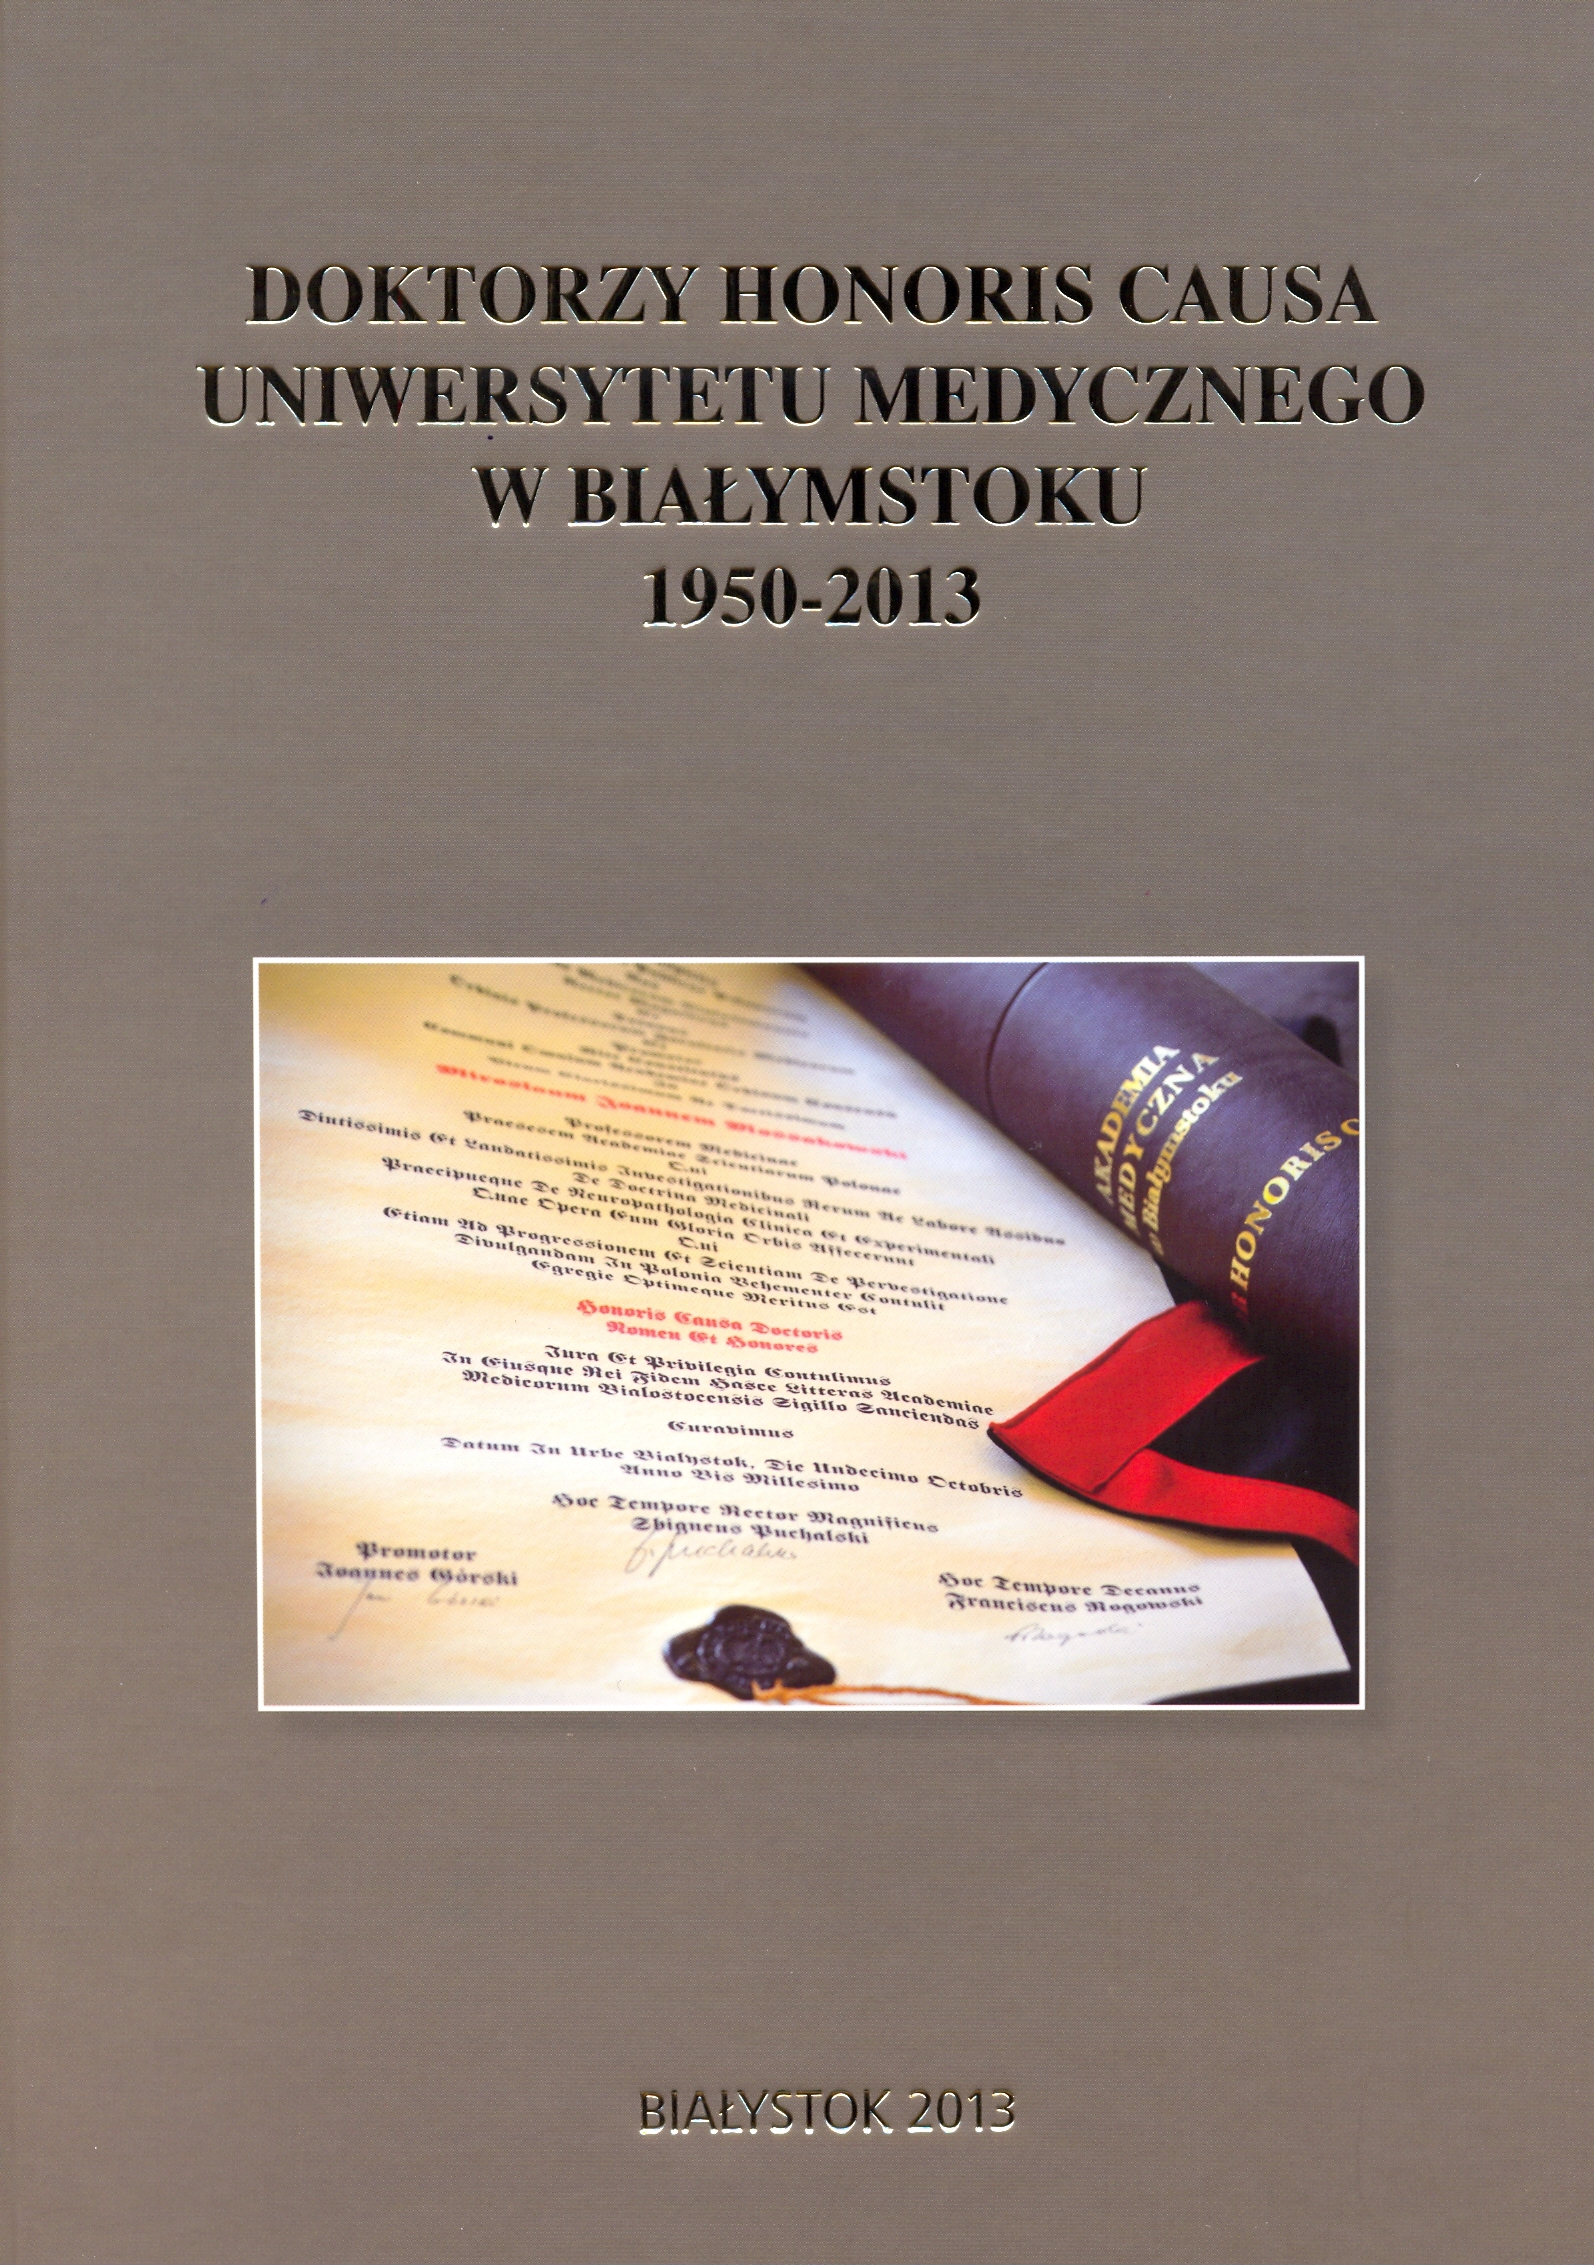 Okładka wyróżnionej publikacji w konkursie na najciekawsze wydarzenie muzealne na Podlasiu w roku 2013.